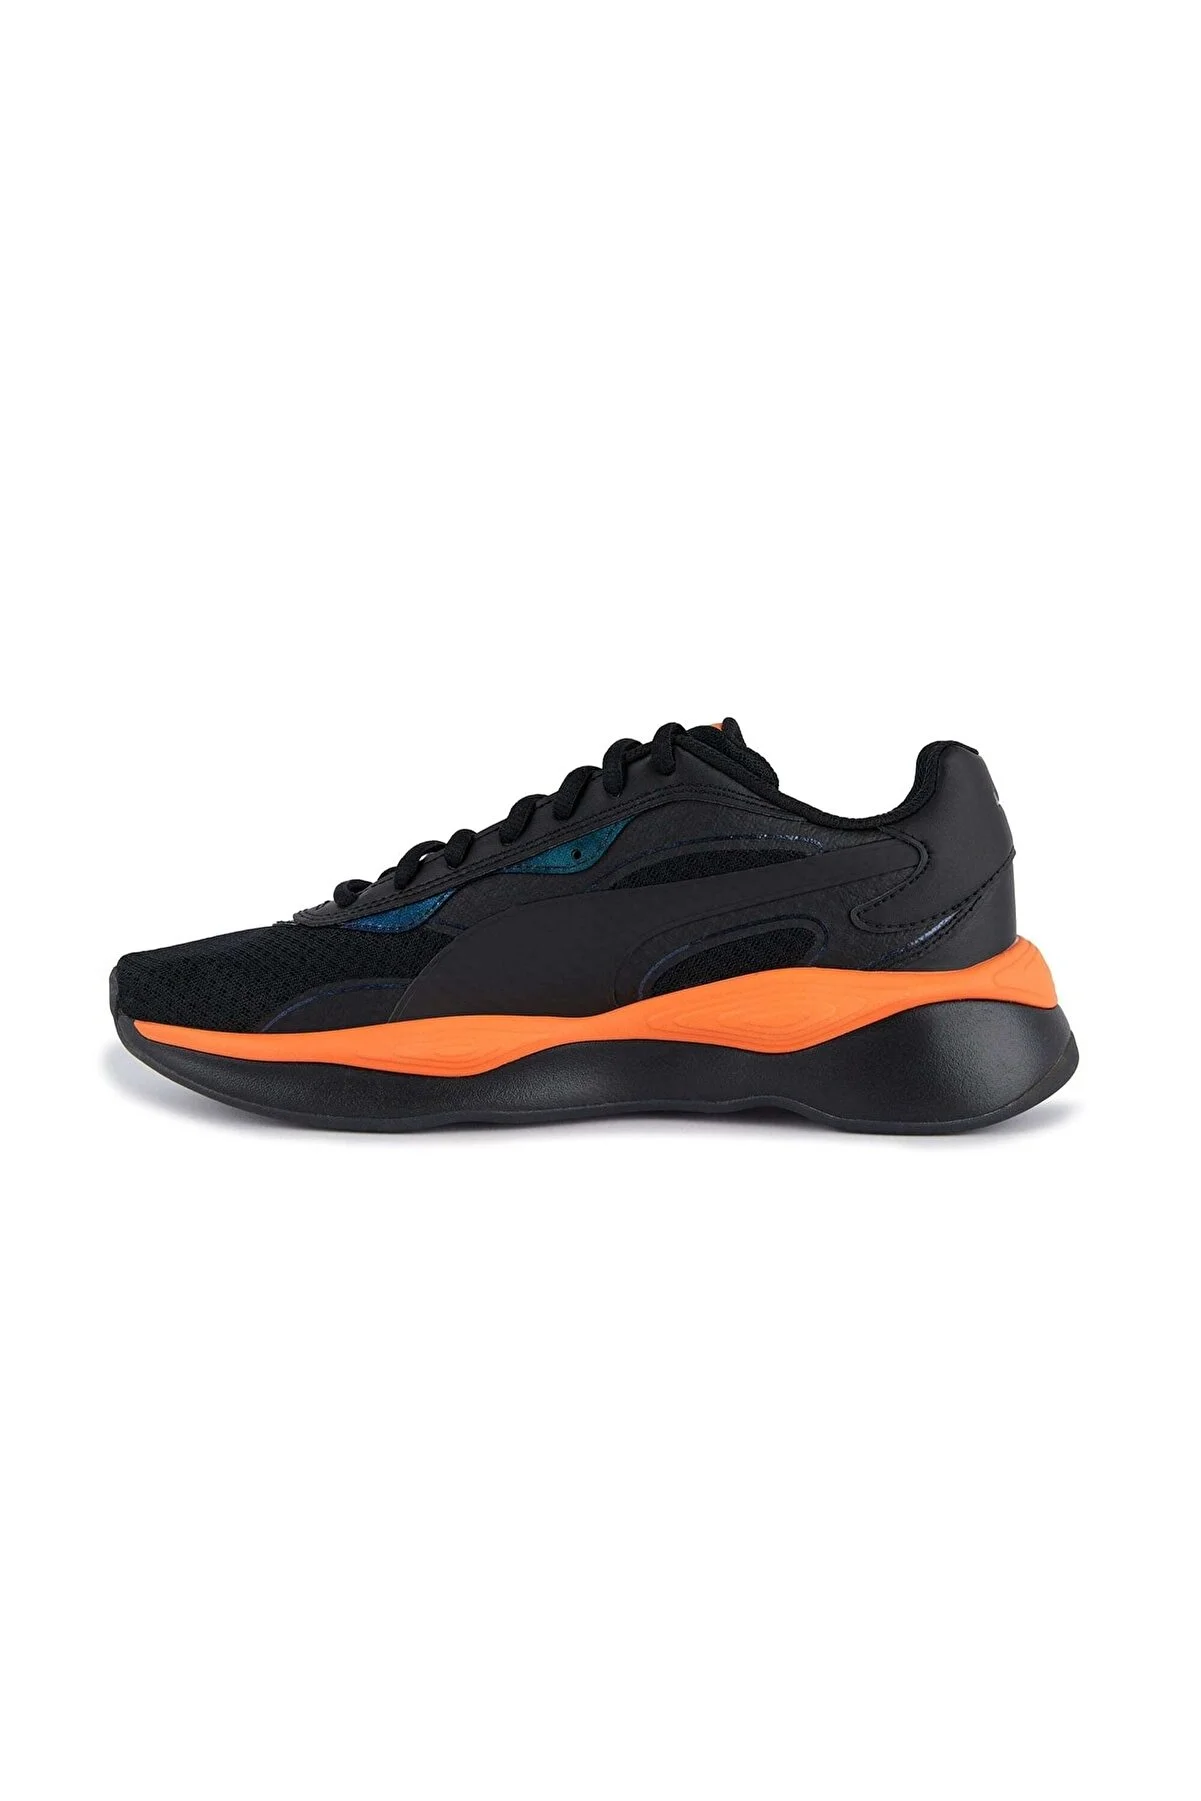 کفش مخصوص دویدن مردانه پوما مدل RS-PURE Tech کد 374258_02